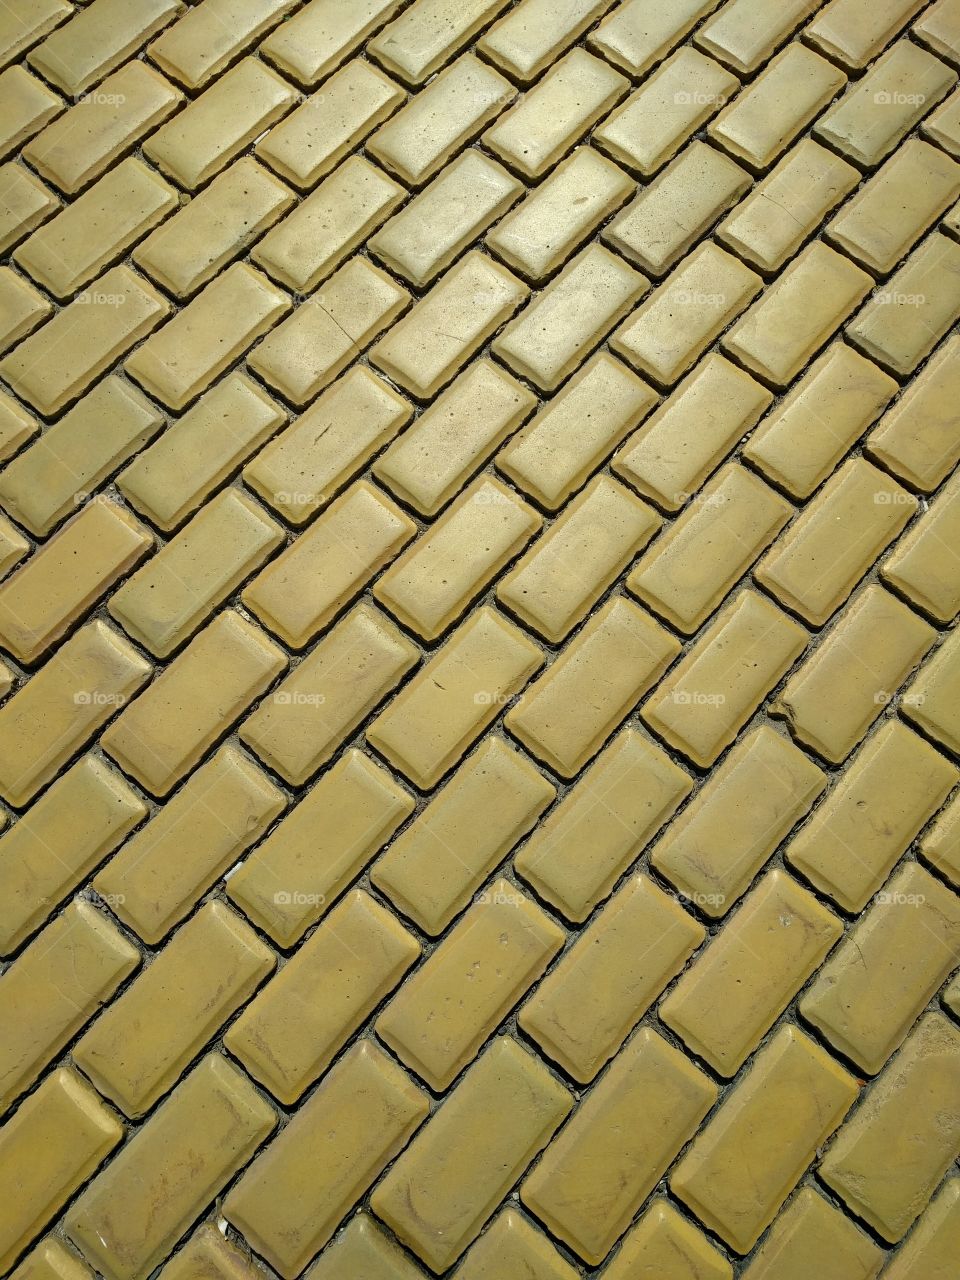 yellow brick pavement